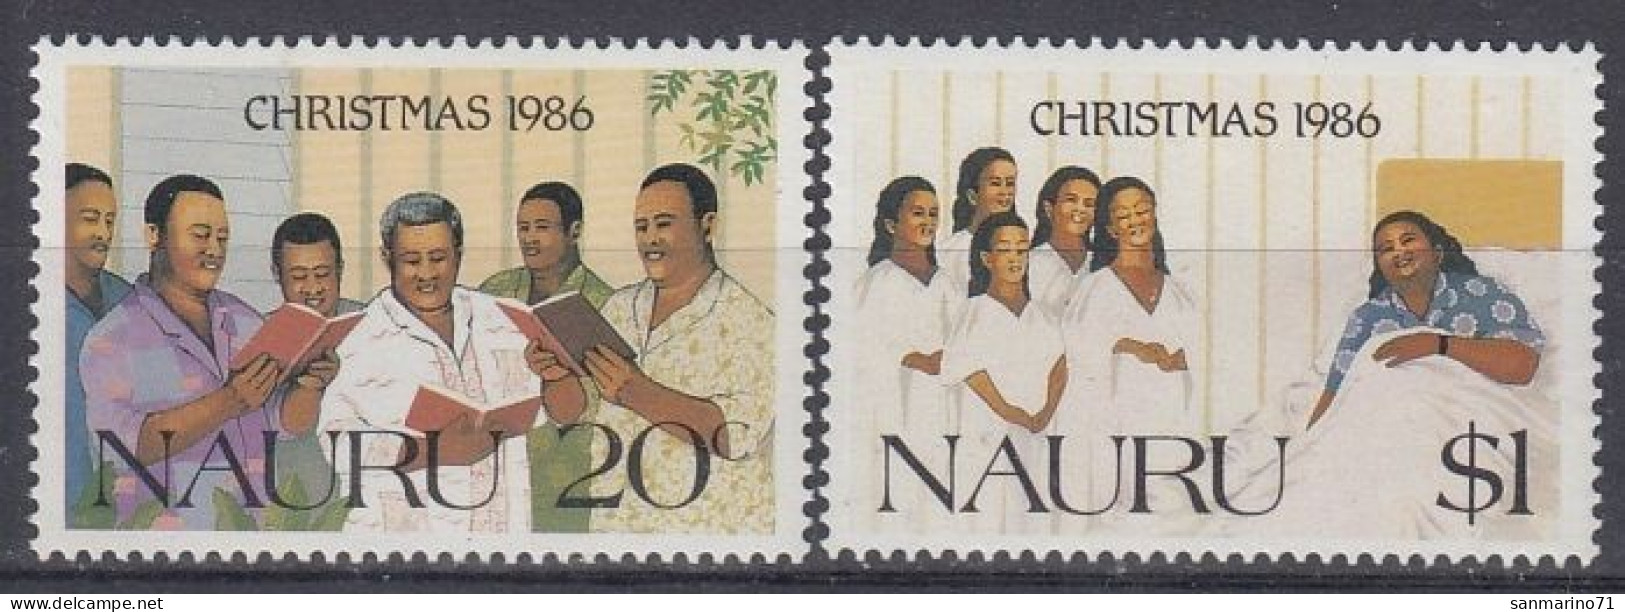 NAURU 328-329,unused,Christmas 1986 (**) - Nauru